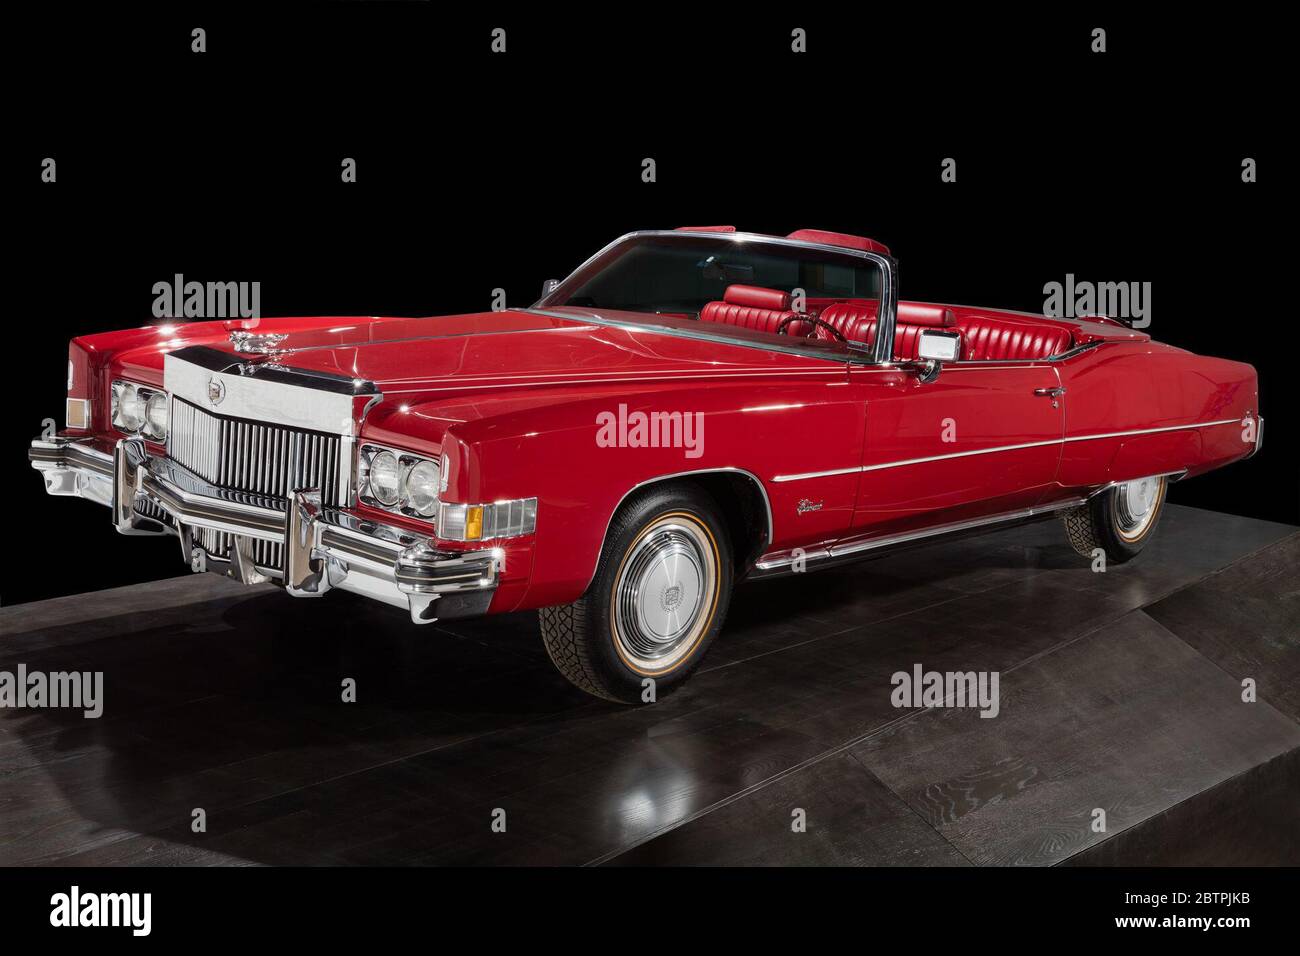 Red Cadillac Eldorado appartenant à Chuck Berry. La voiture fait partie de  la flotte personnelle de Cadillac de Berry et a été conduite pendant le  tournage de Hail! Hail ! Rock 'n'